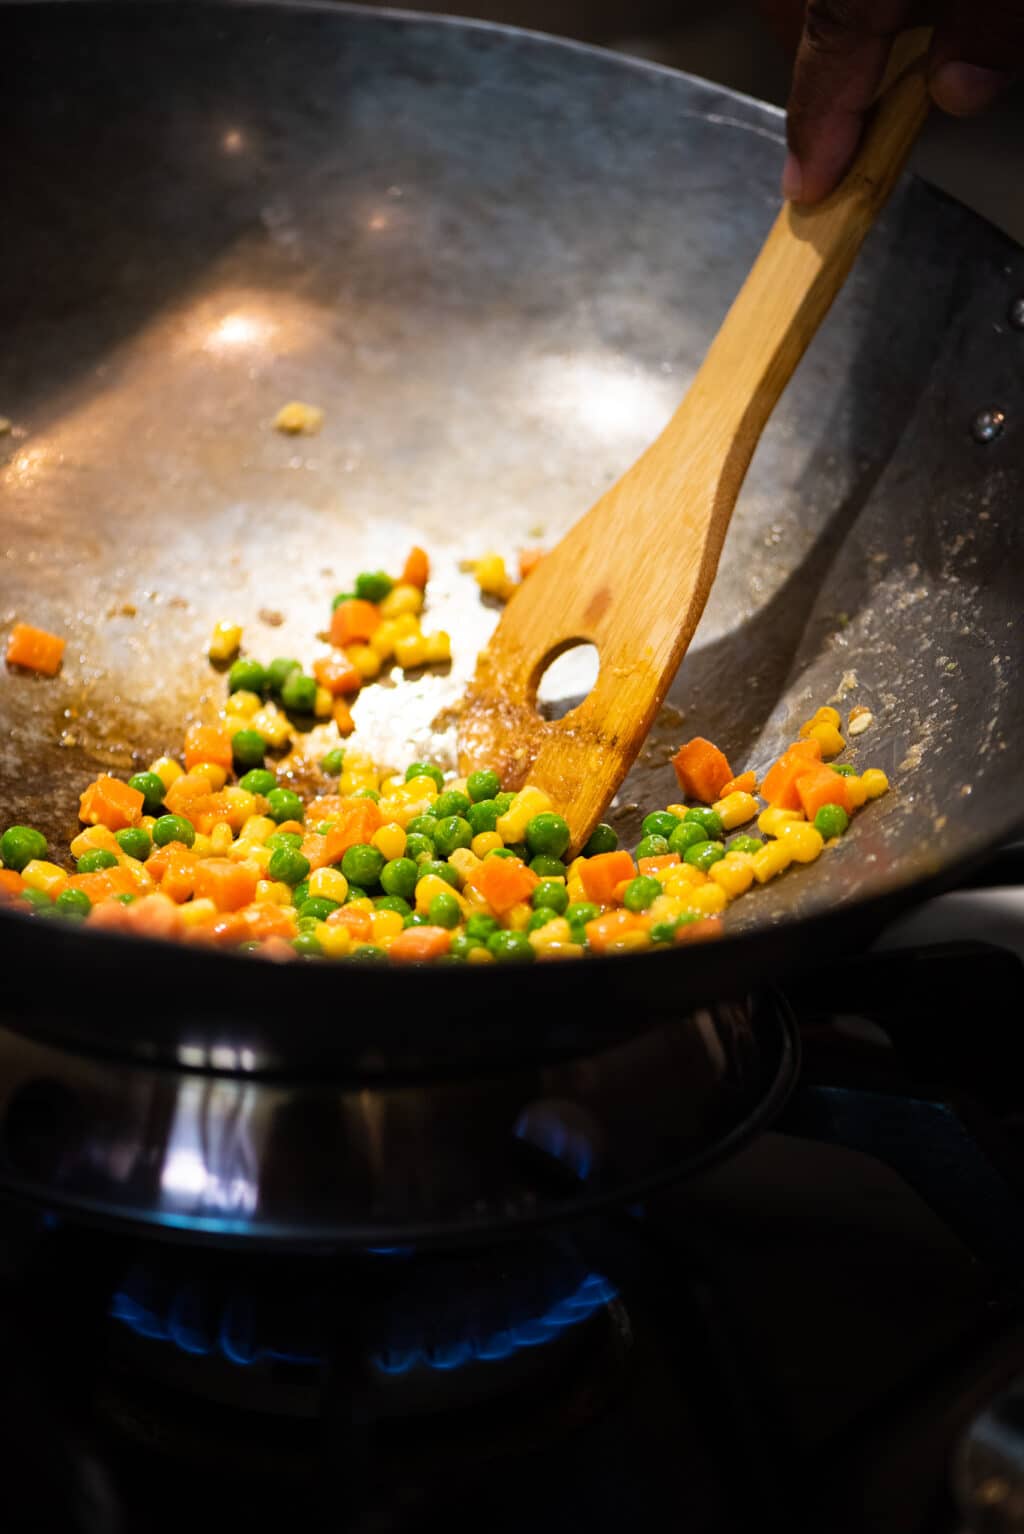 Add frozen veggies to wok